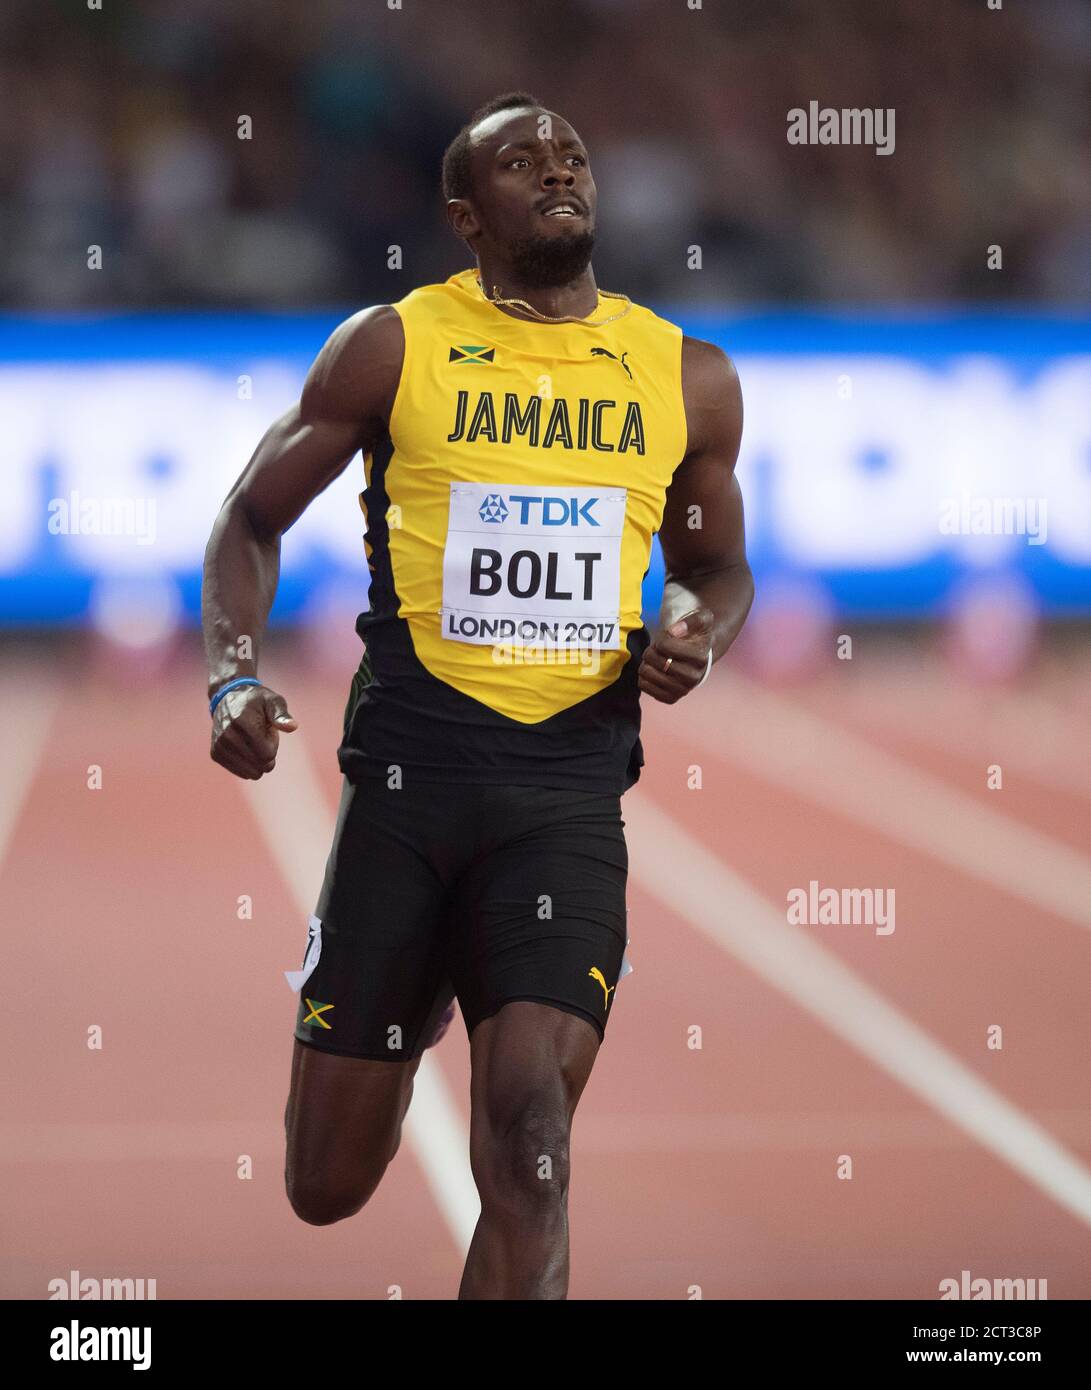 Usain bolt nella semifinale Mens 100m Campionati mondiali di atletica 2017. Immagine : © Mark Pain / Alamy Foto Stock